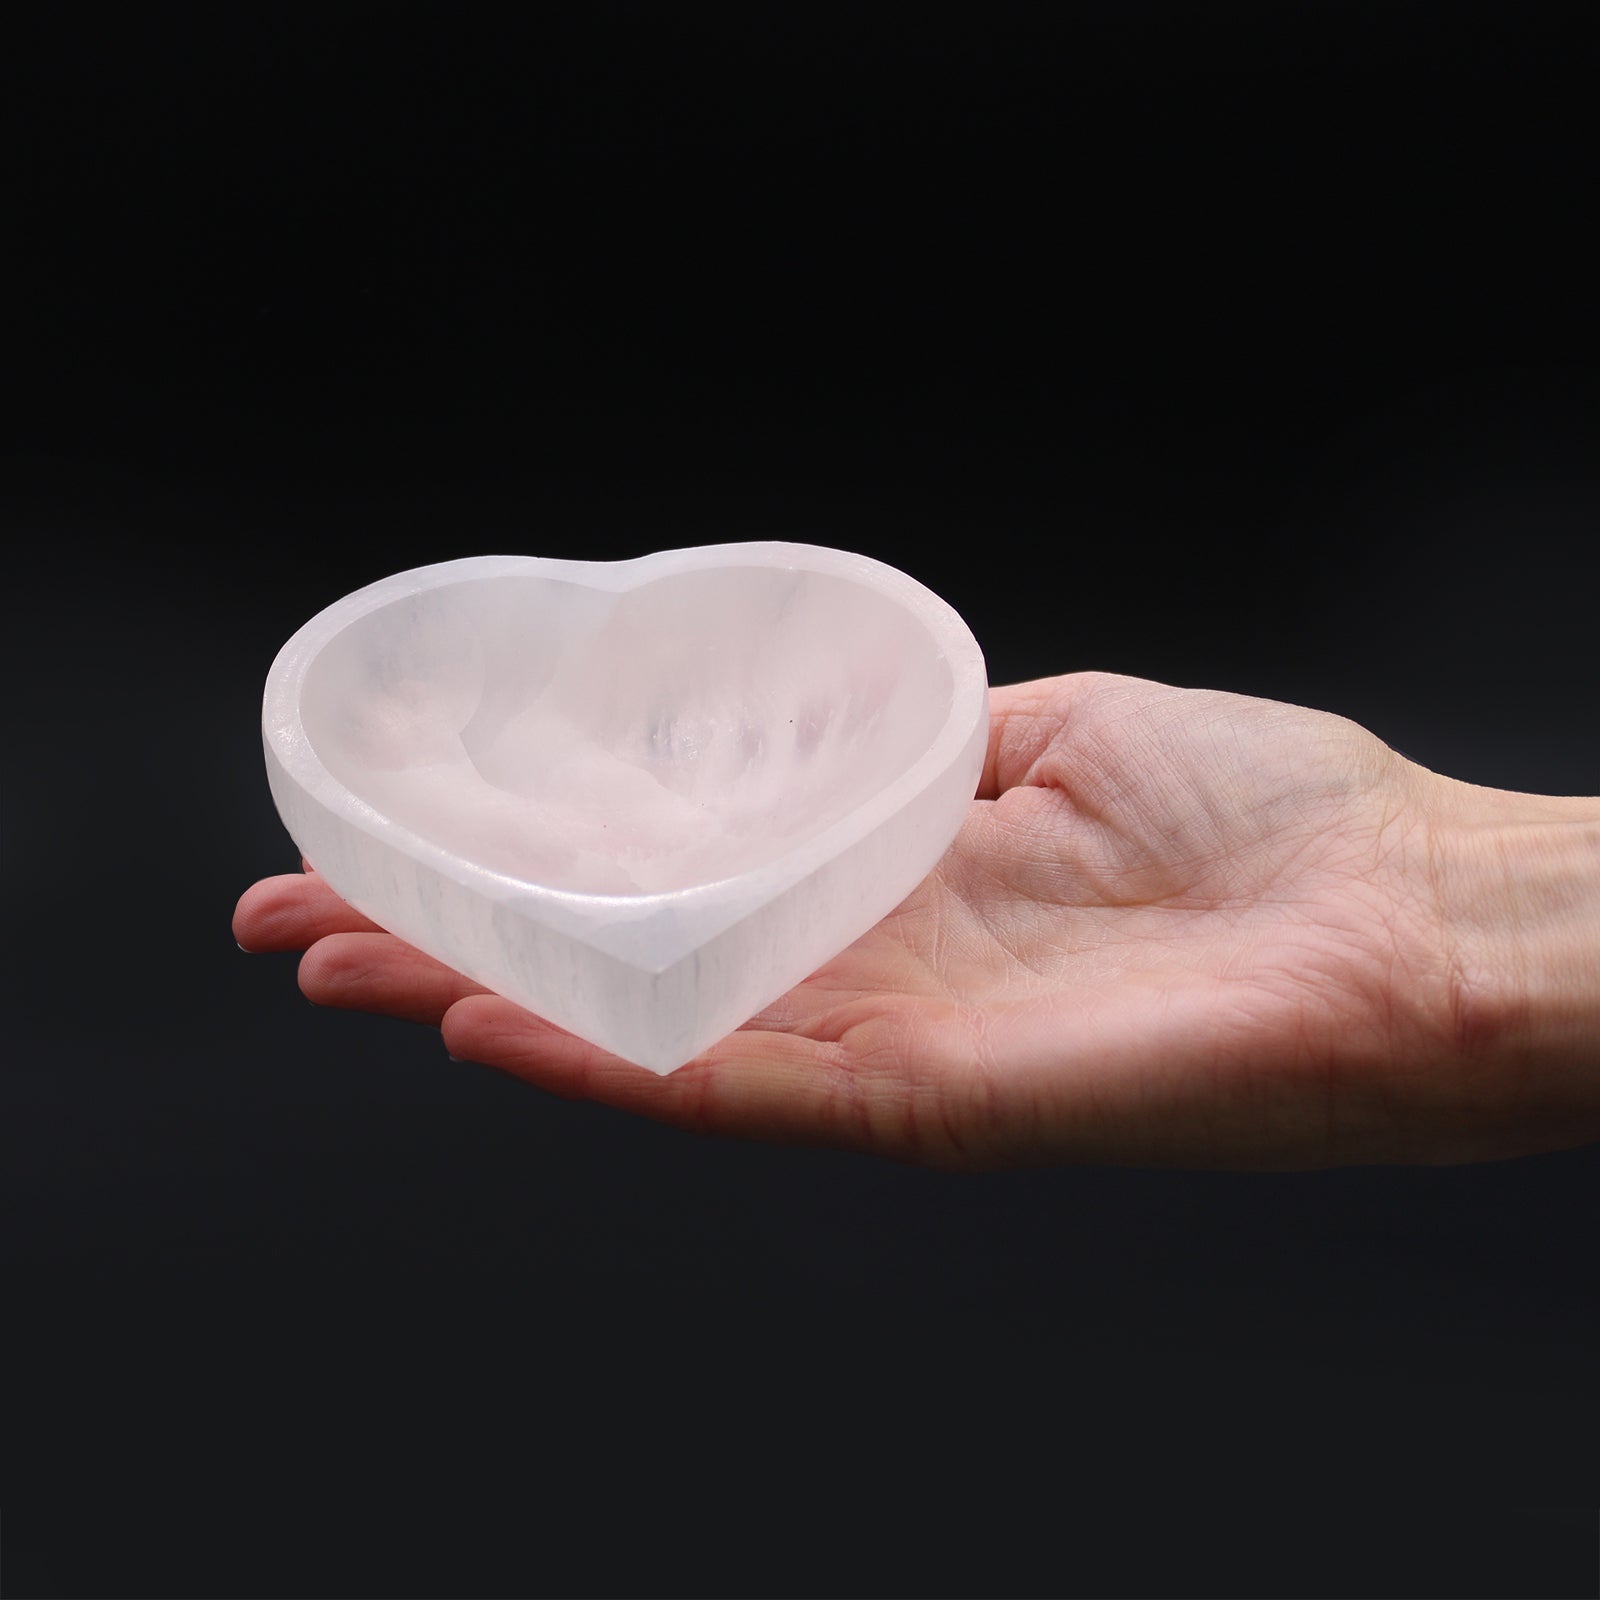 Selenite Heart Bowl - 10cm